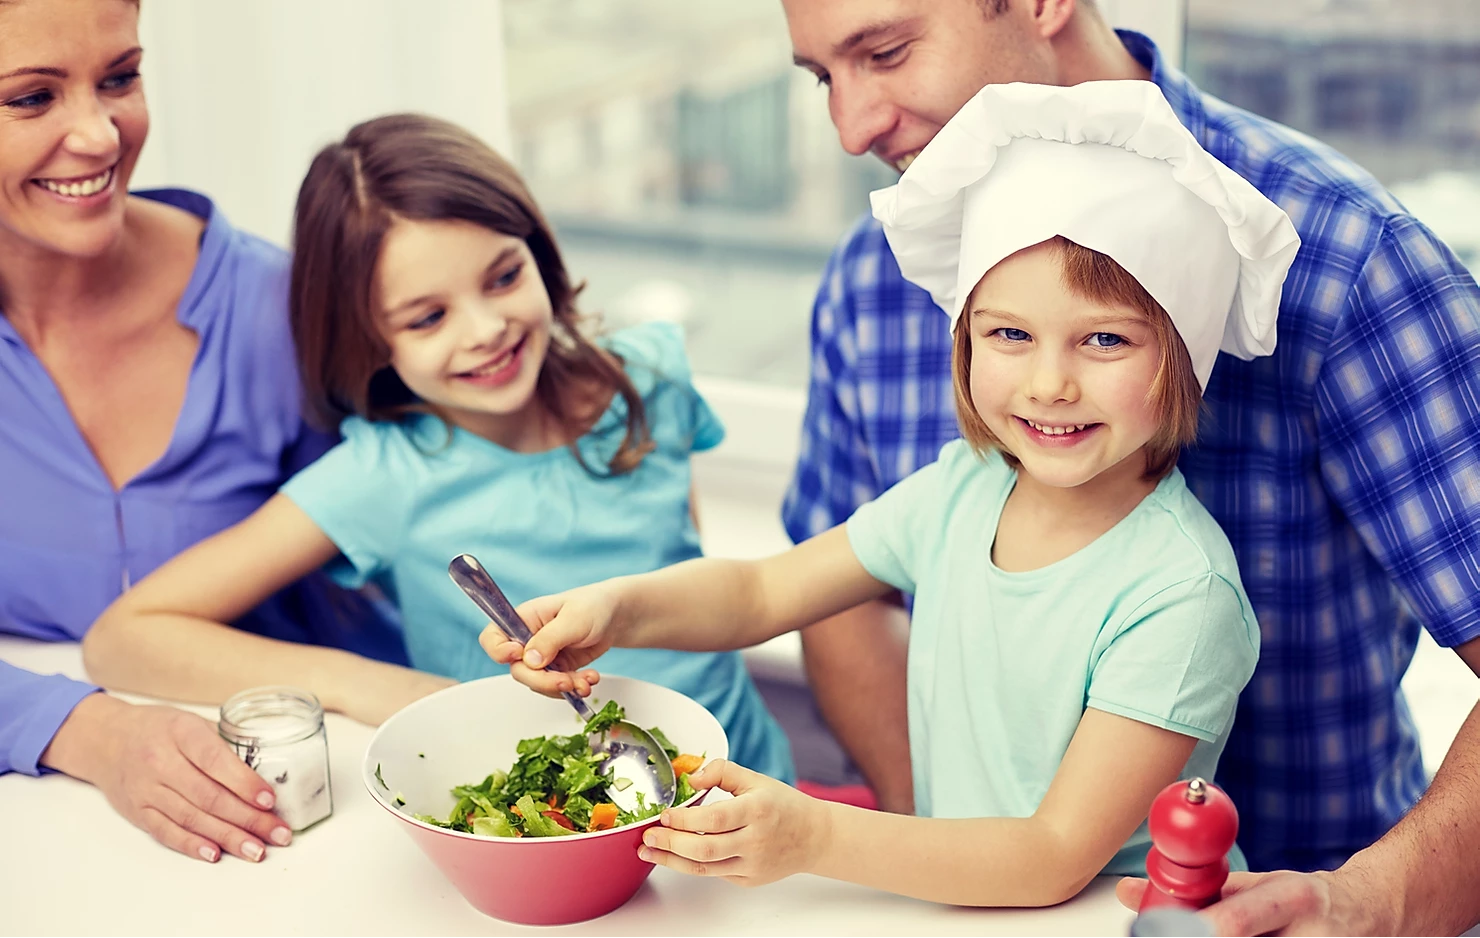 Обед для детей. Здоровое питание в семье. Семья на кухне. Совместная готовка с детьми.